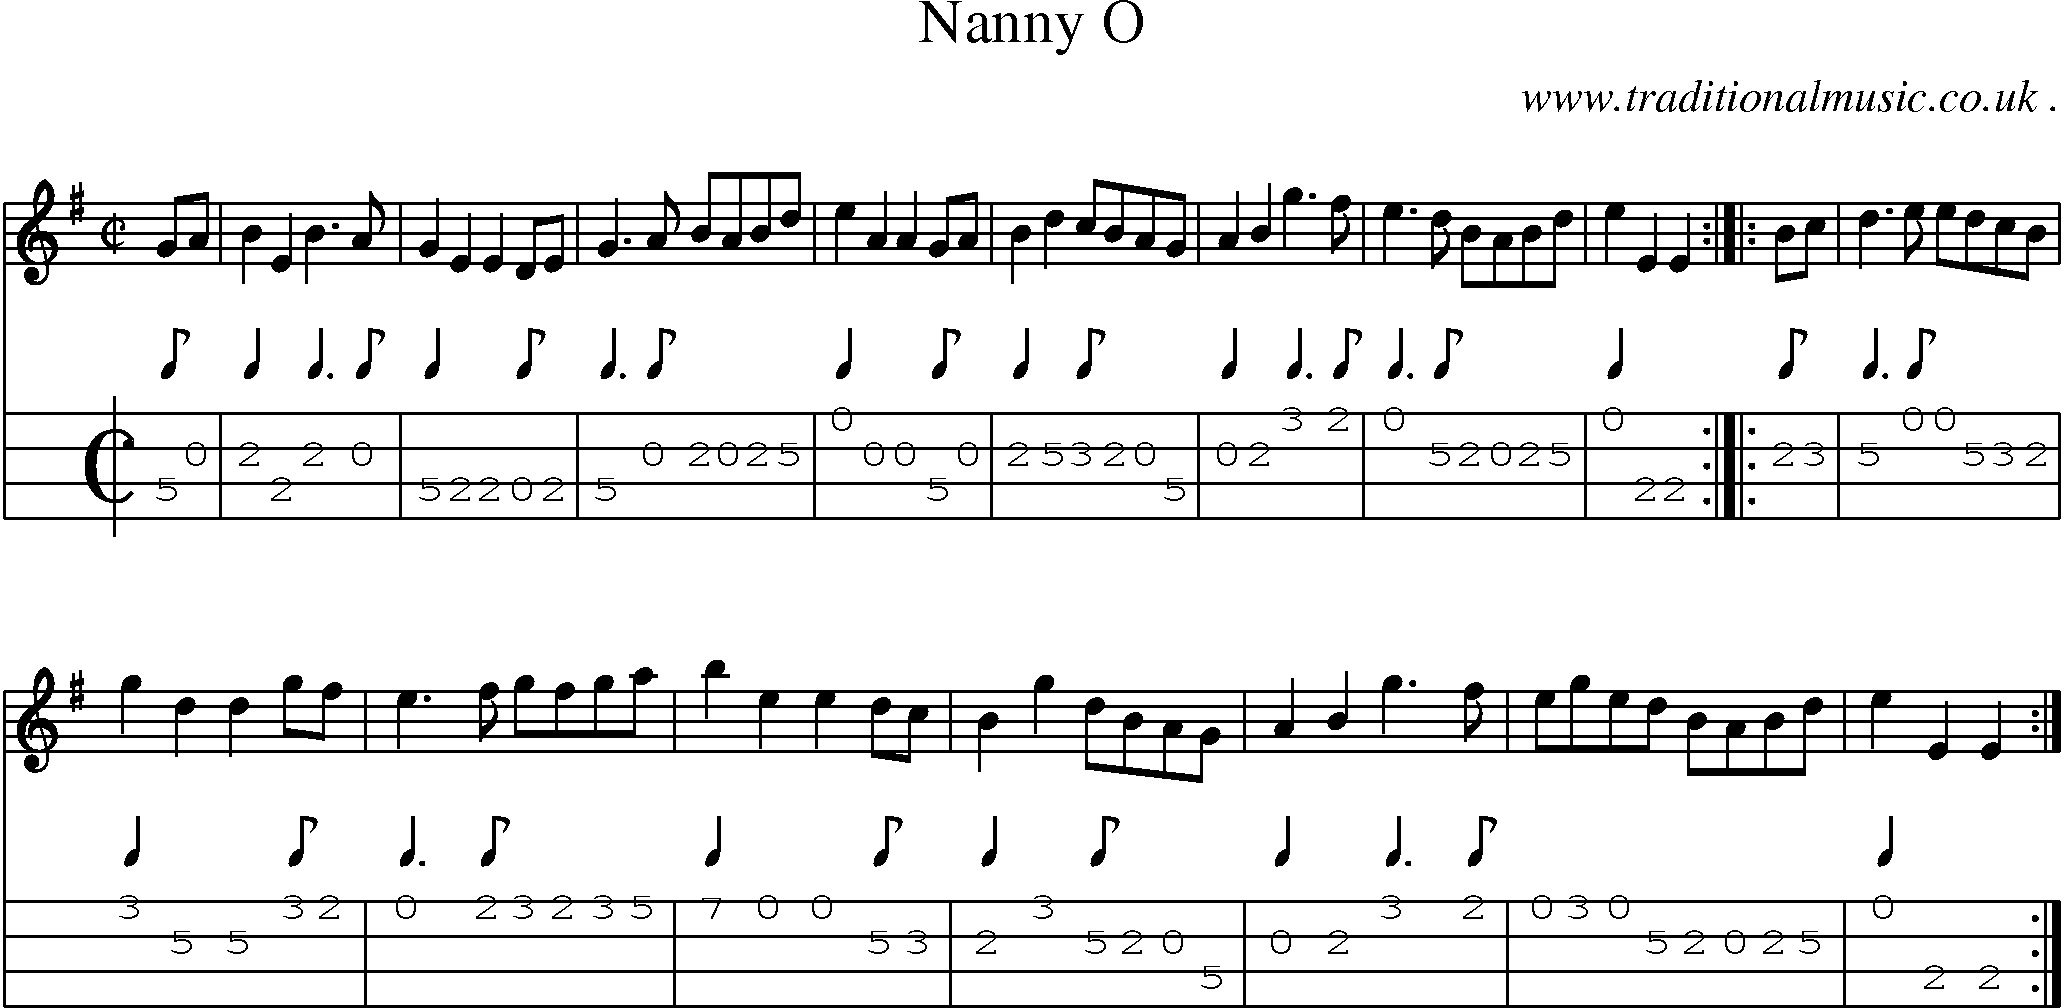 Sheet-Music and Mandolin Tabs for Nanny O